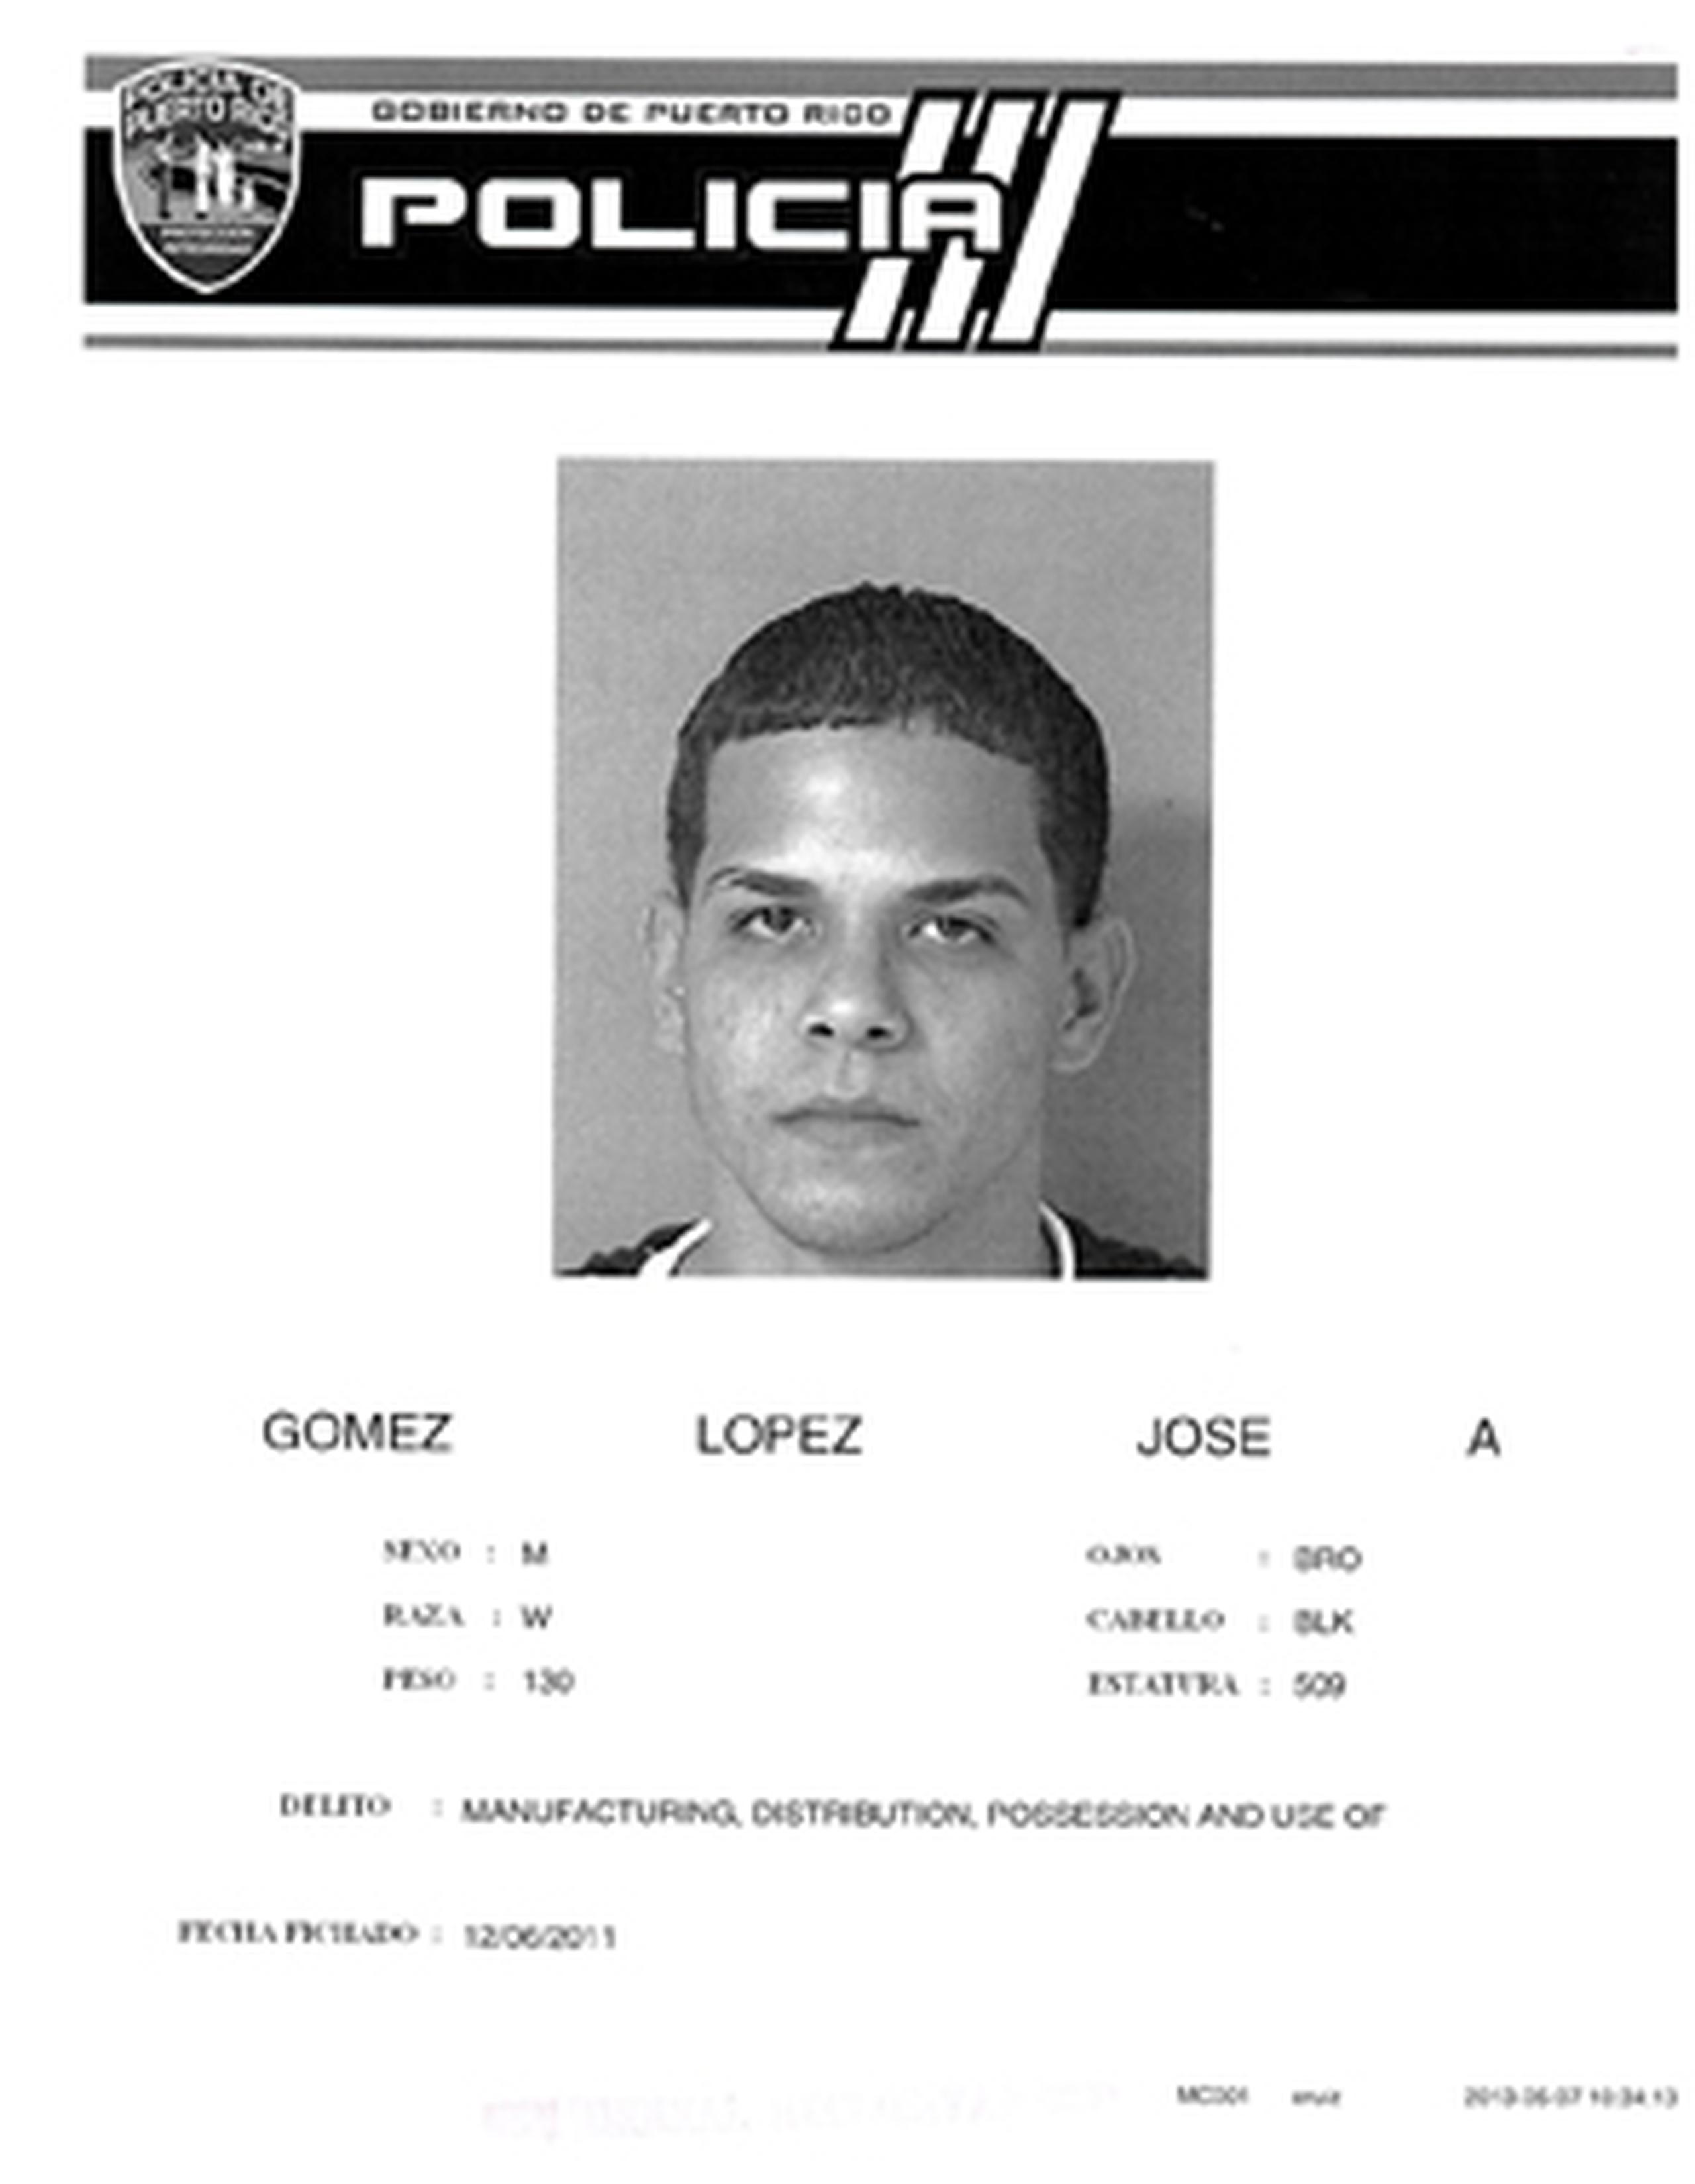 El juez Rafael Jiménez Rivera, de la Sala de Investigaciones de San Juan, expidió la orden de arresto contra José Gómez López, señalándole una fianza de $22.4 millones. (Suministrada)